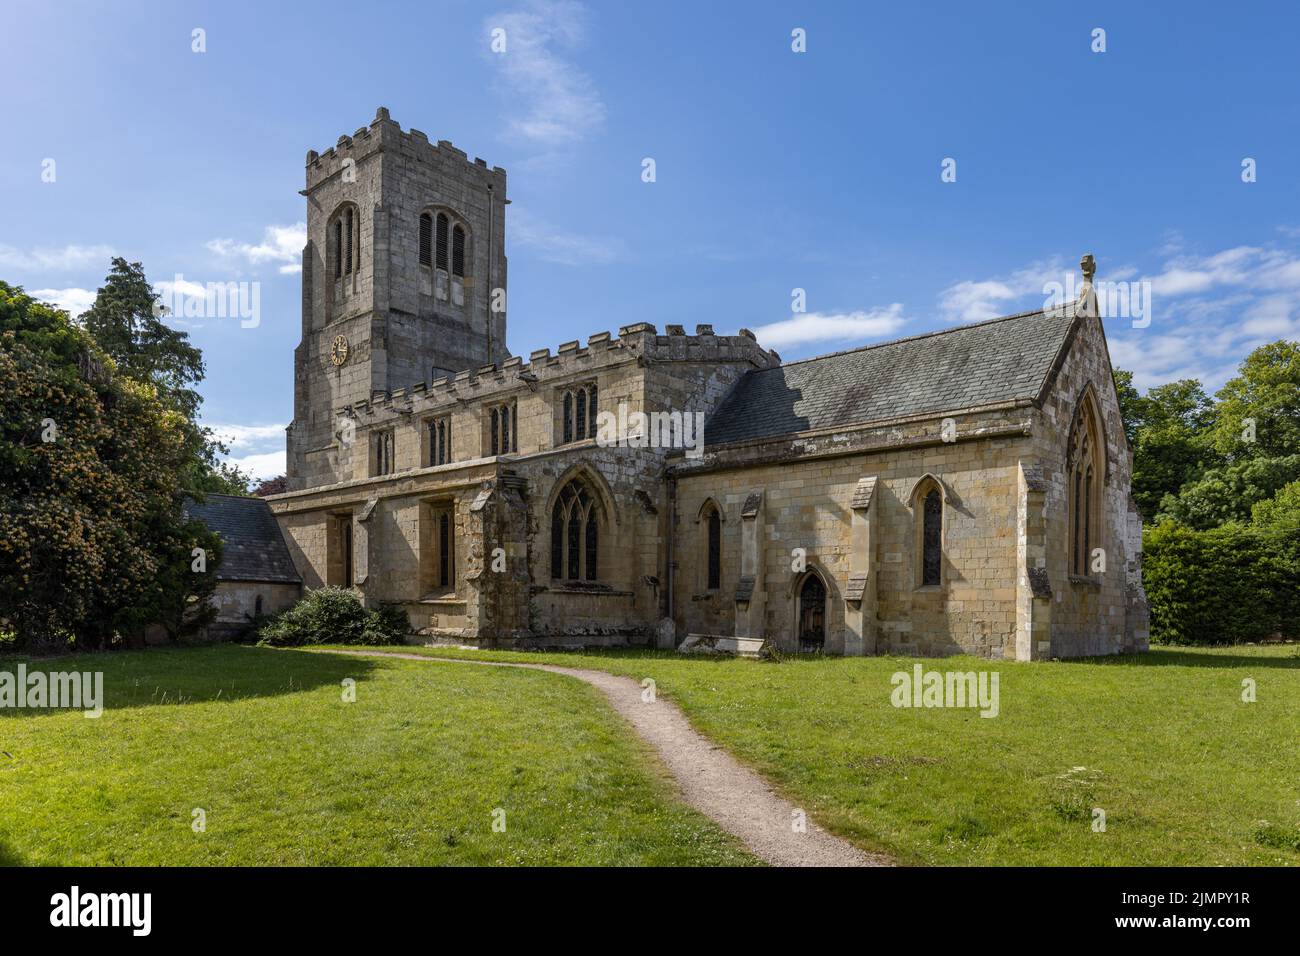 St Martin's Church, Burton Agnes, una storica chiesa del 13th° secolo situata nella zona orientale dello Yorkshire, Inghilterra, Regno Unito Foto Stock